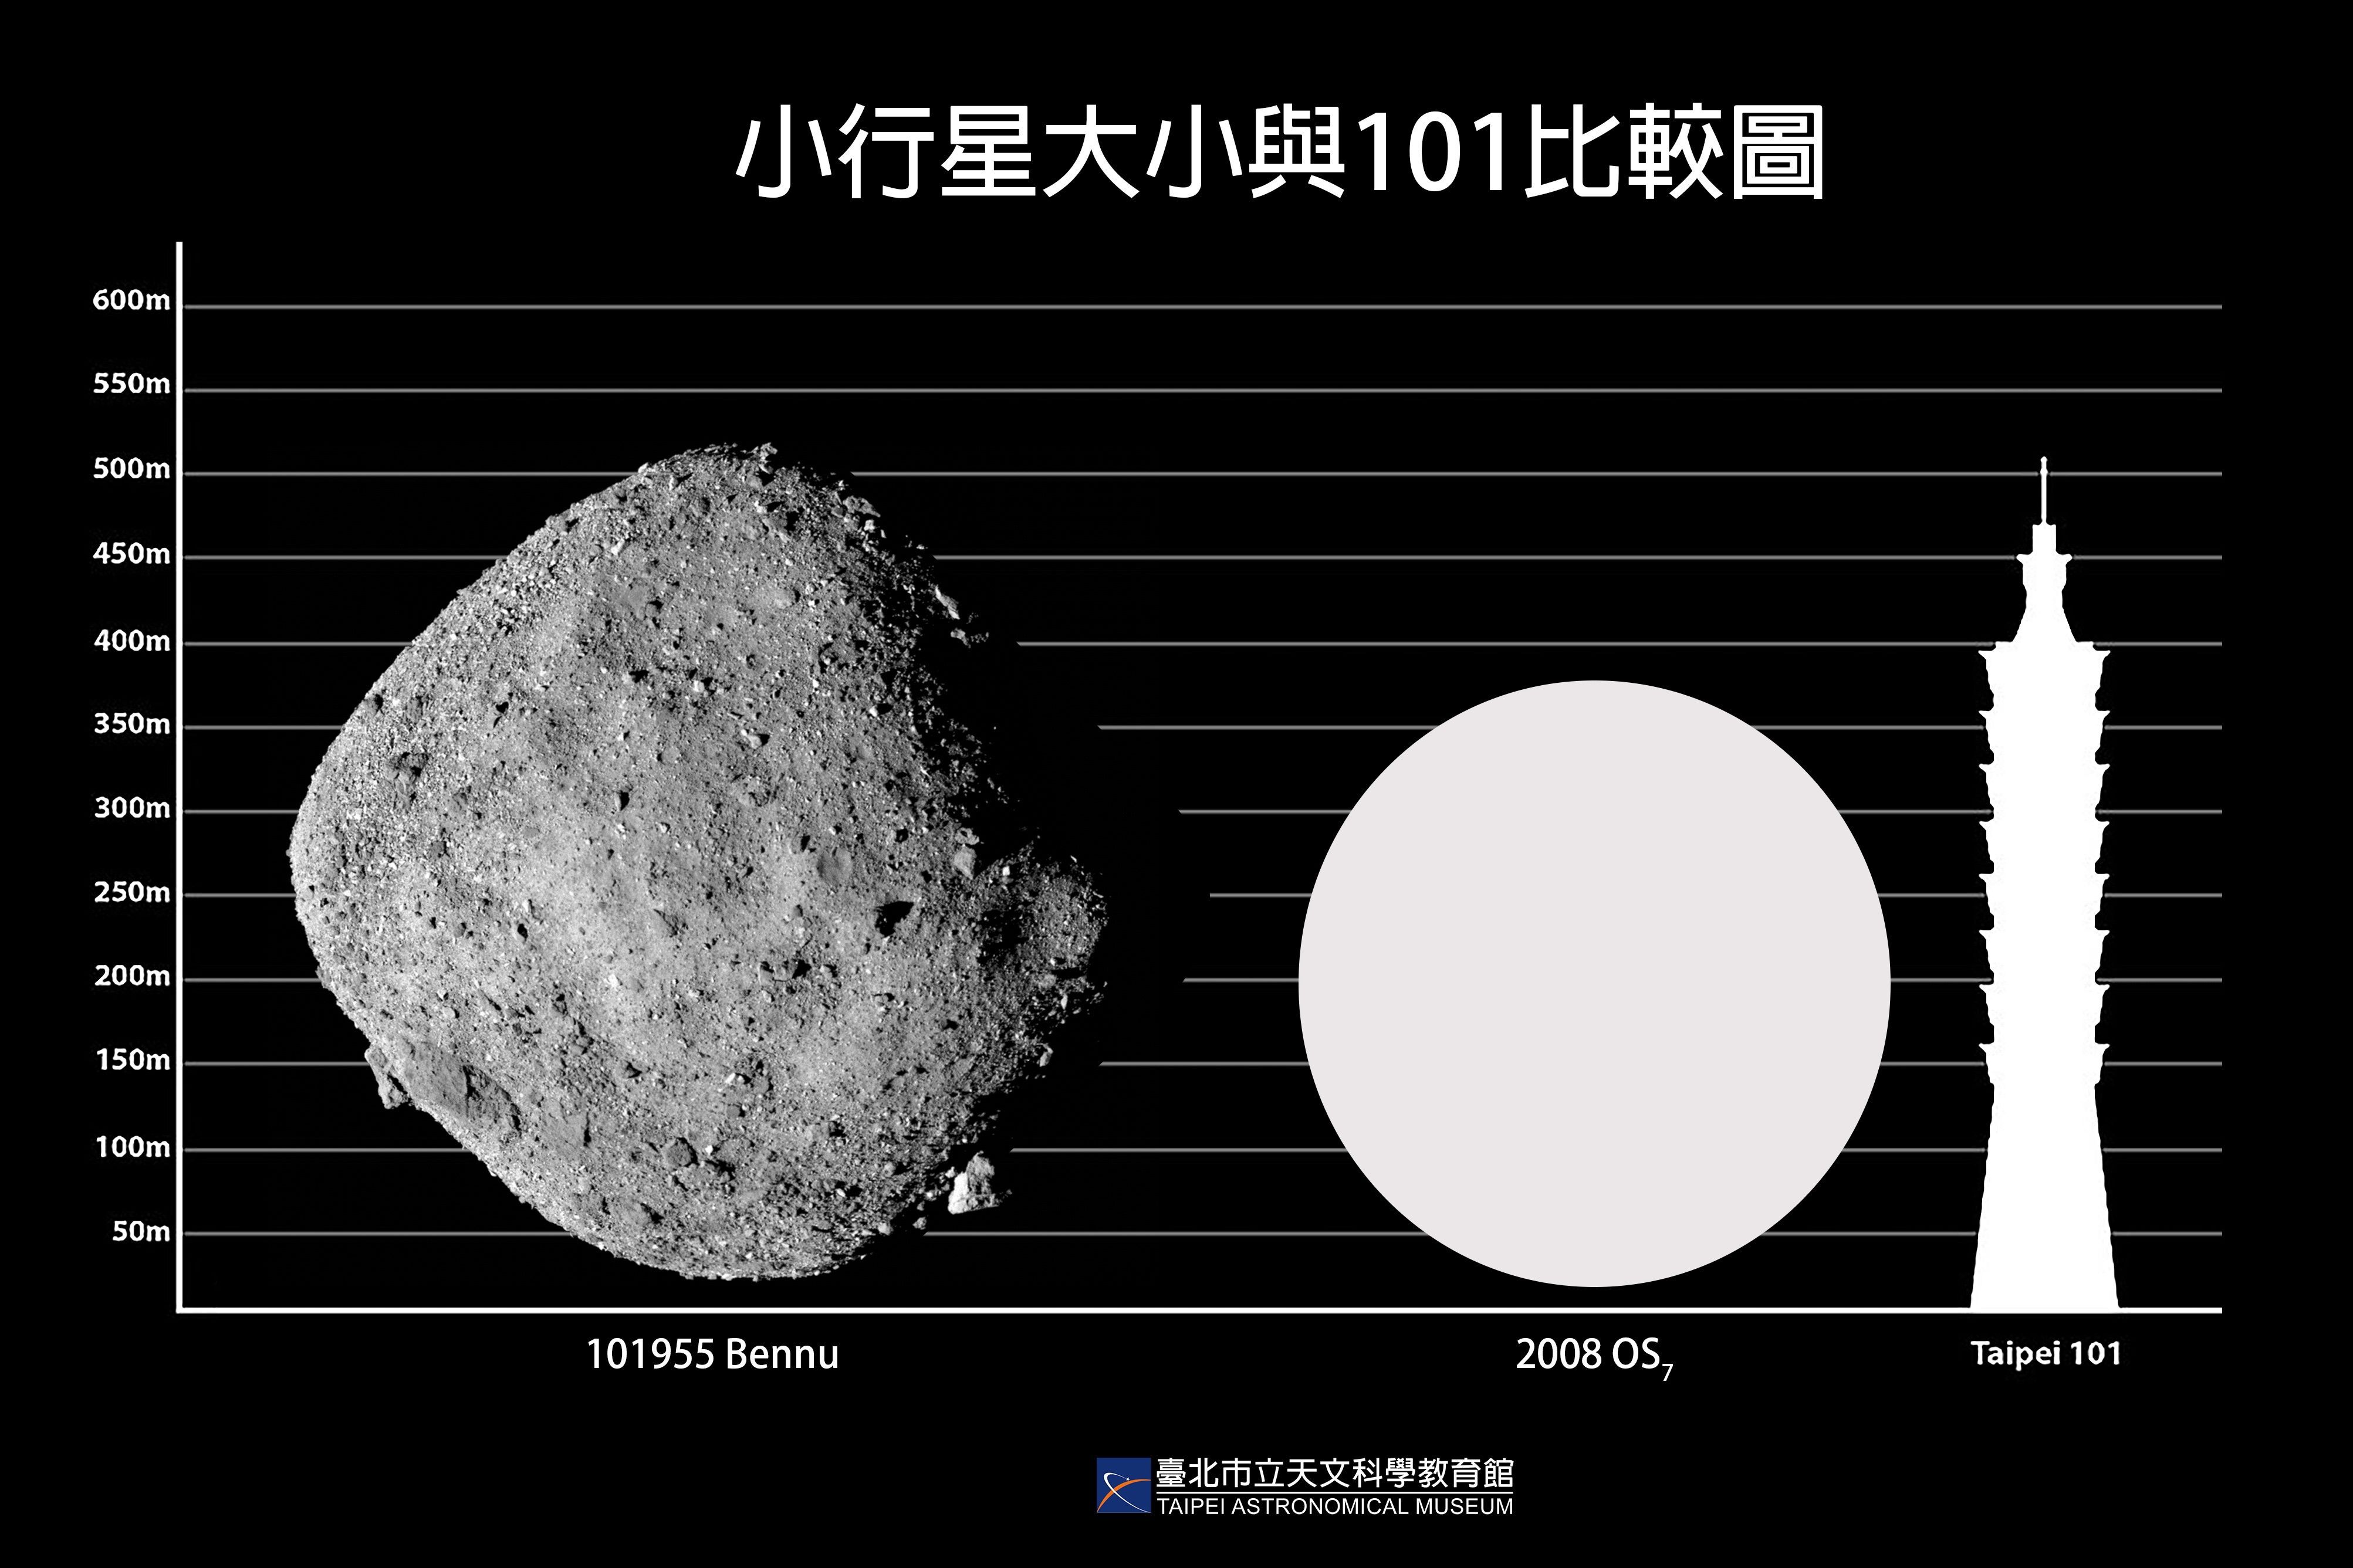 和台北101一樣大！潛在威脅小行星「2／2最接近地球」　撞擊可能性曝